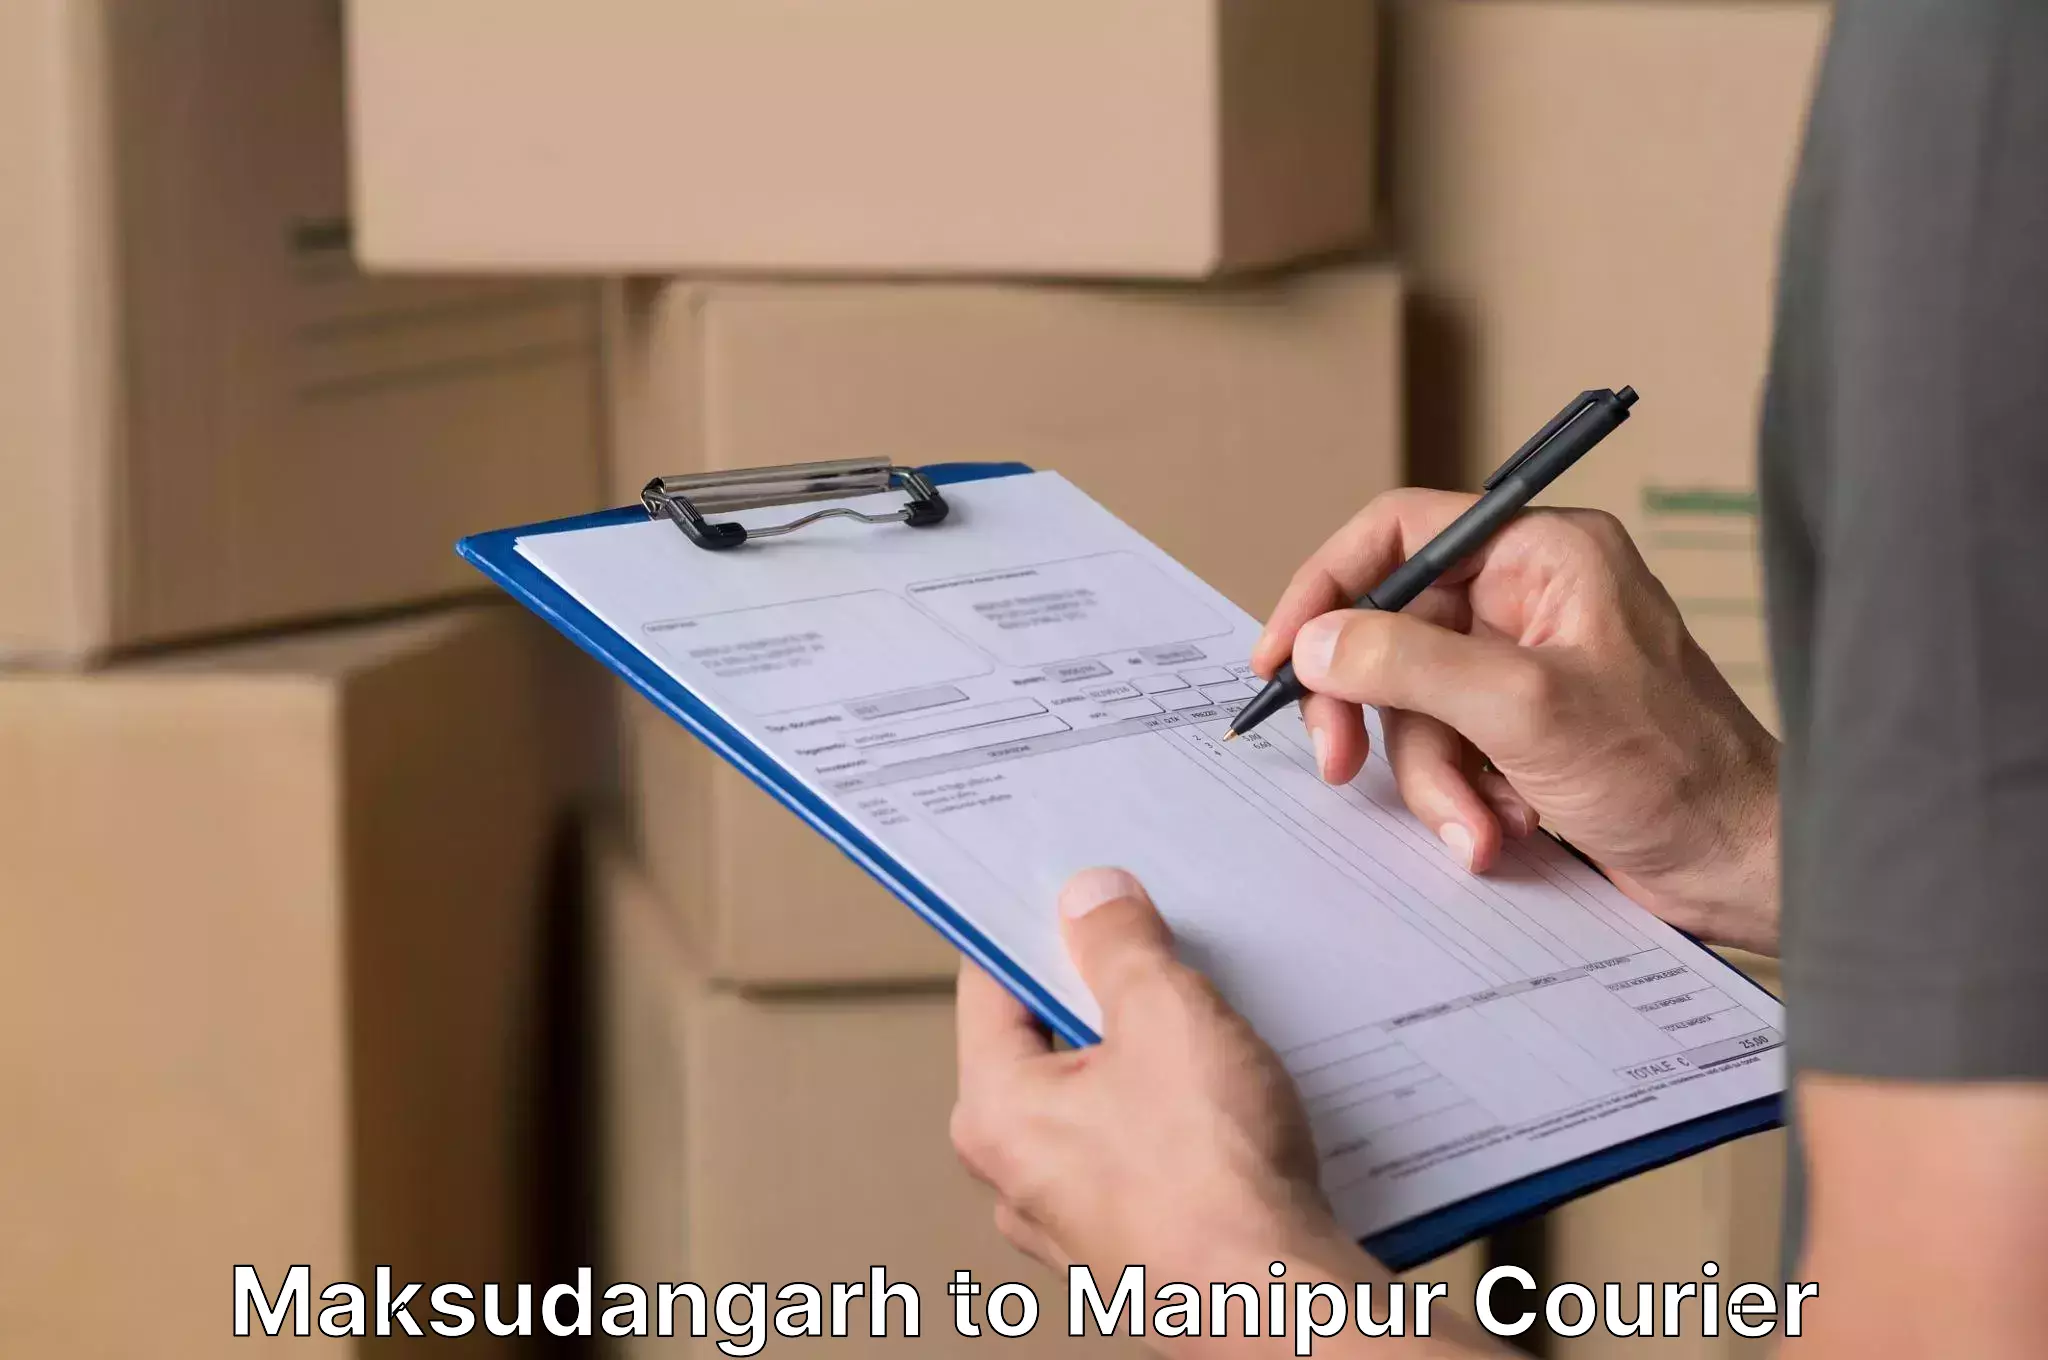 Moving and packing experts Maksudangarh to Churachandpur